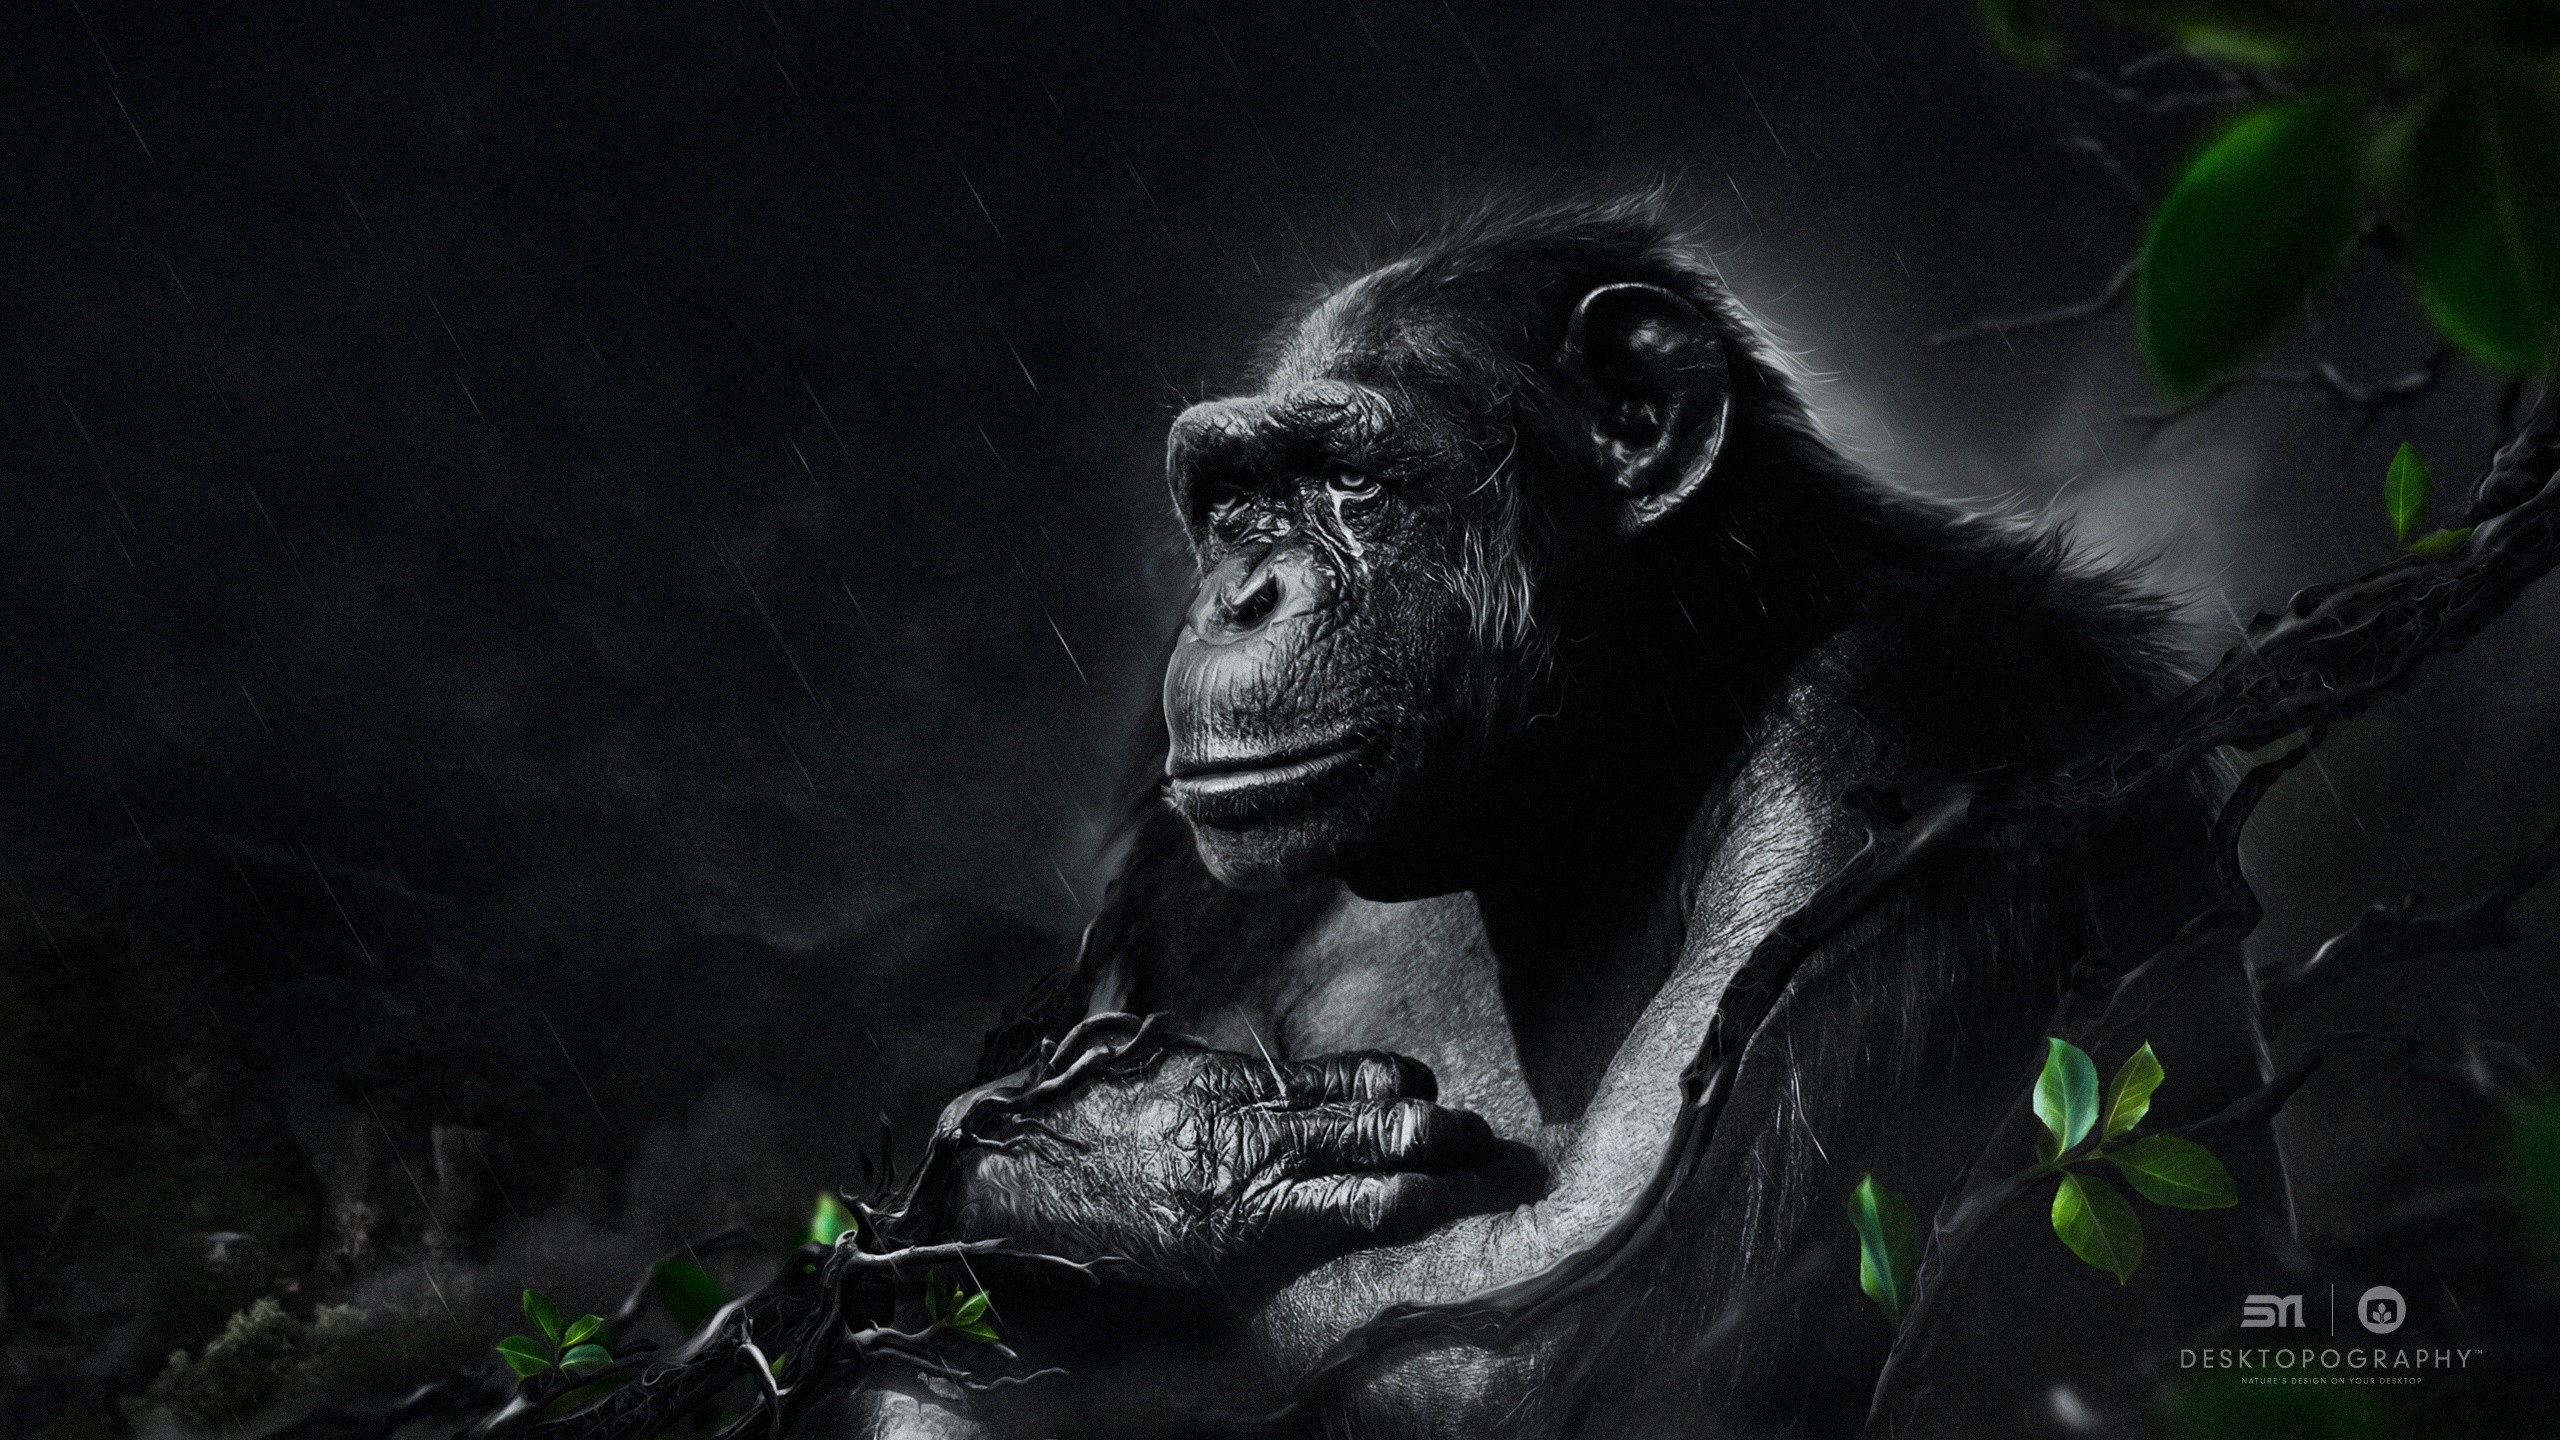 Monkey Fantasy Art Gorillas Desktopography 2560x1440